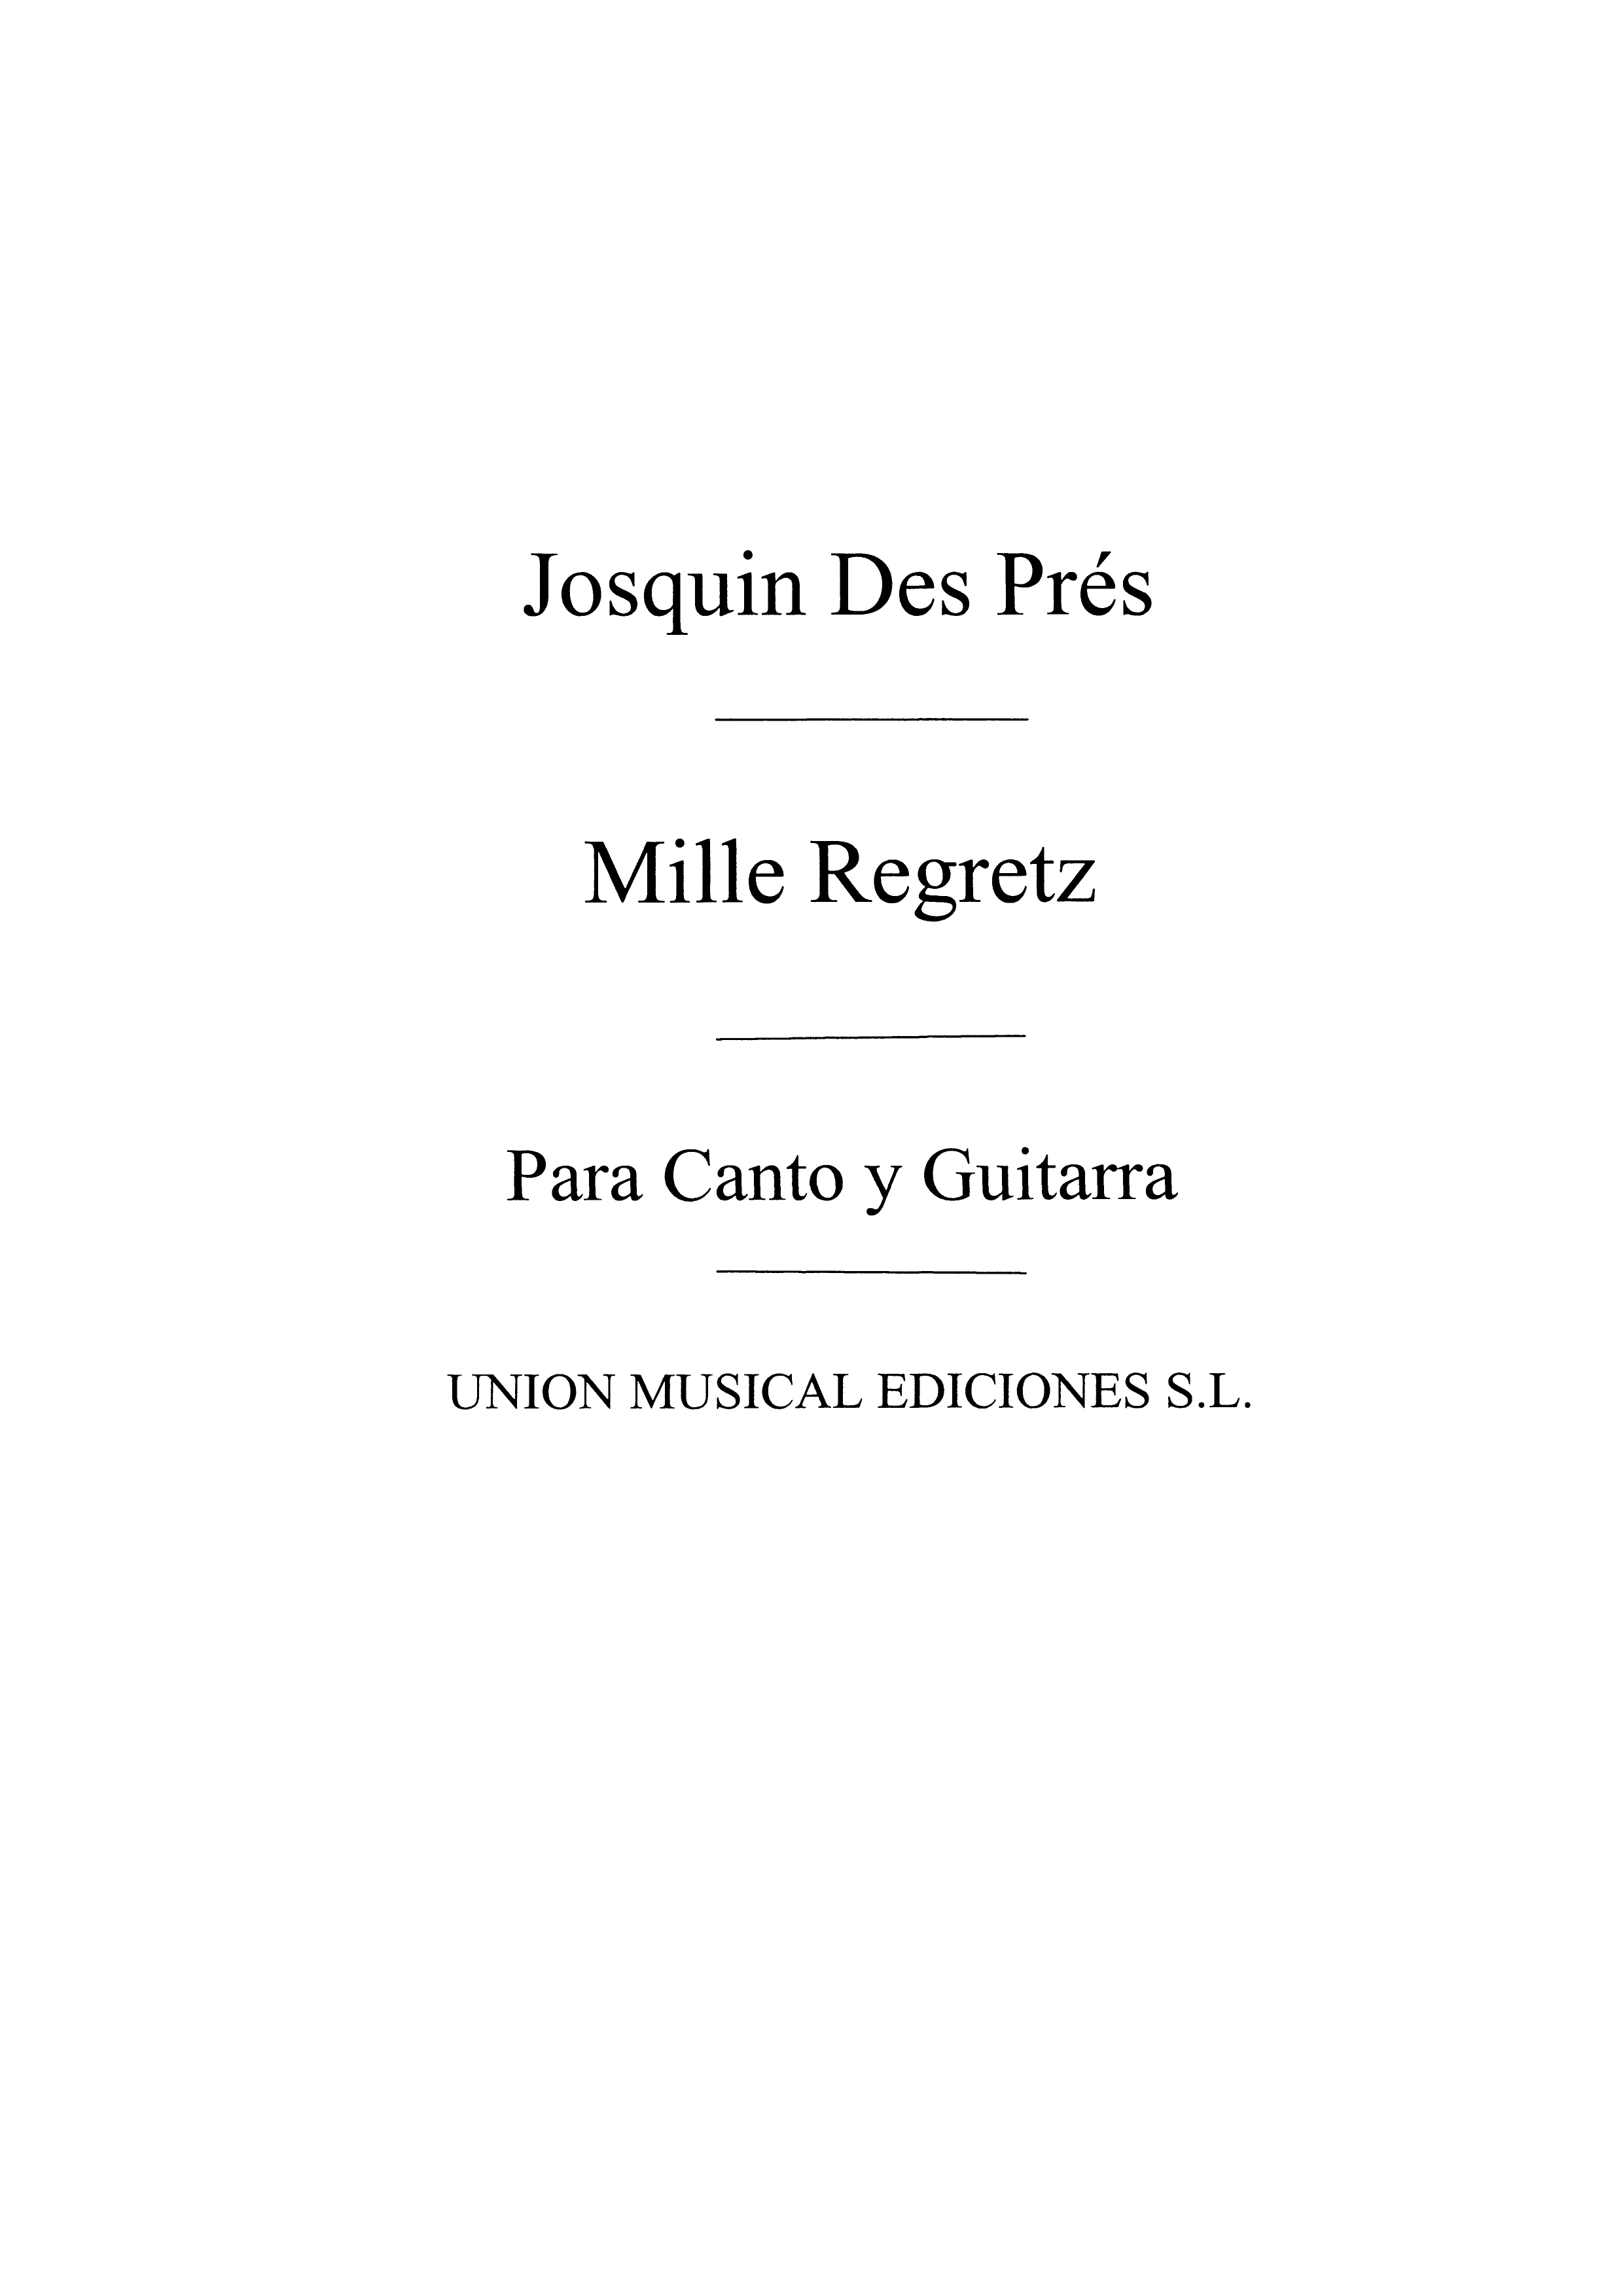 Josquin Des Prez: Mille Regretz Cancion (Azpiazu): Voice: Score